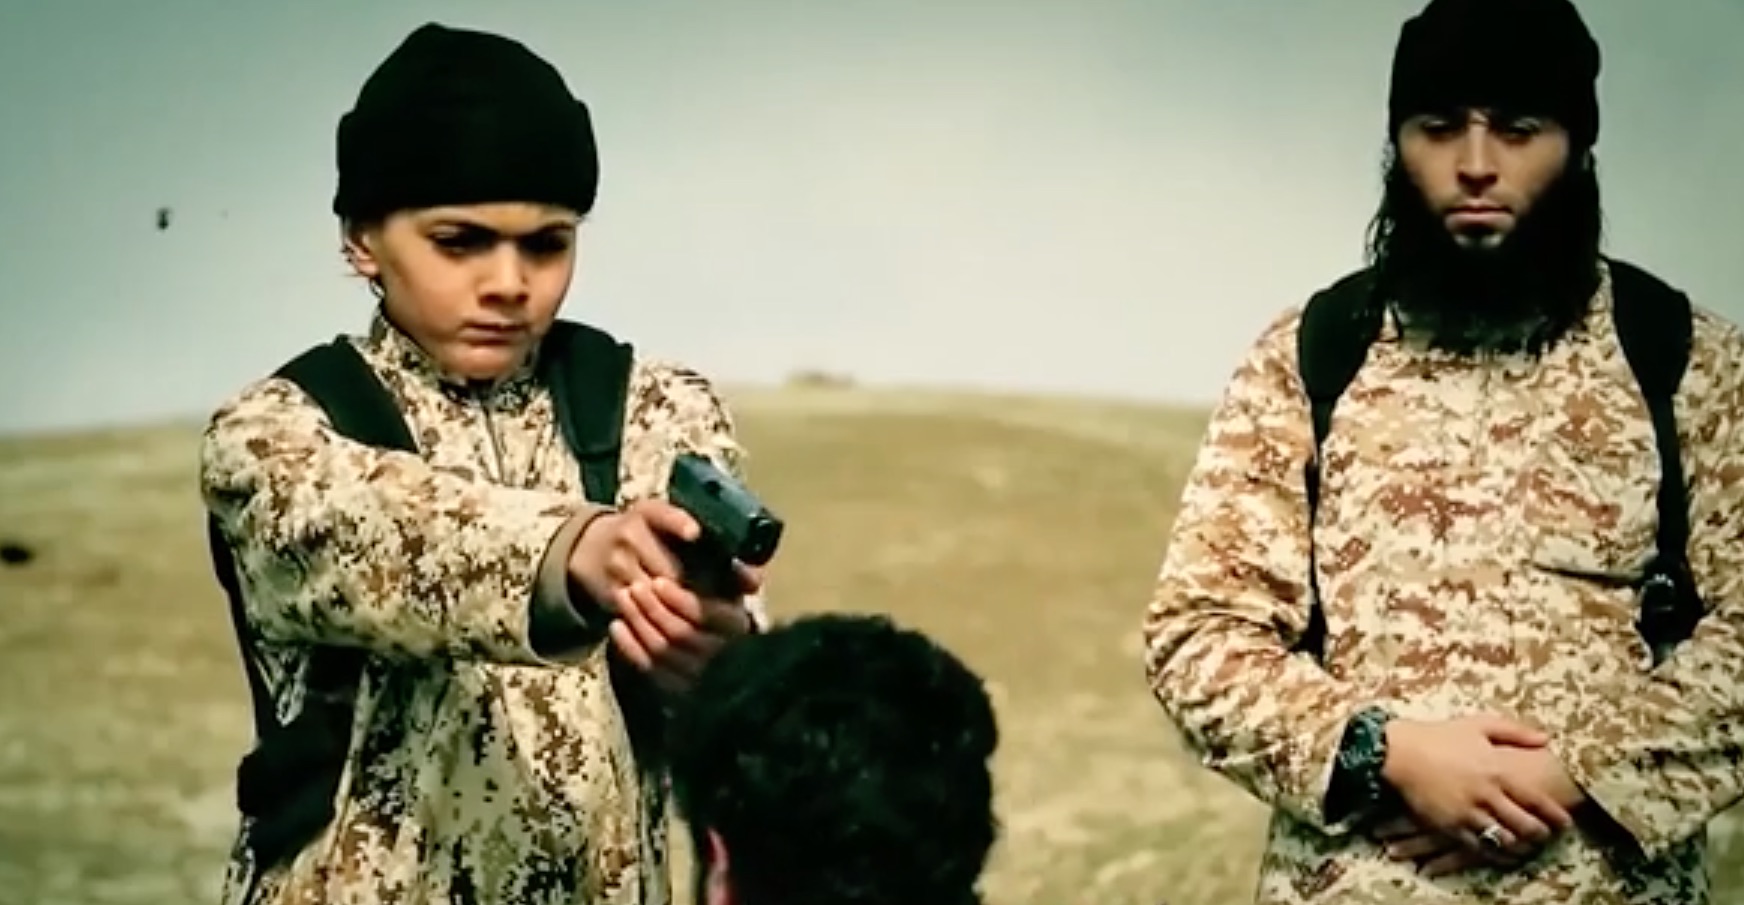 В 10-минутном видеоролике с пропагандой ИГ показаны дети, размахивающие пистолетами и стреляющие в пленников ИГ. [Фото из архива] 